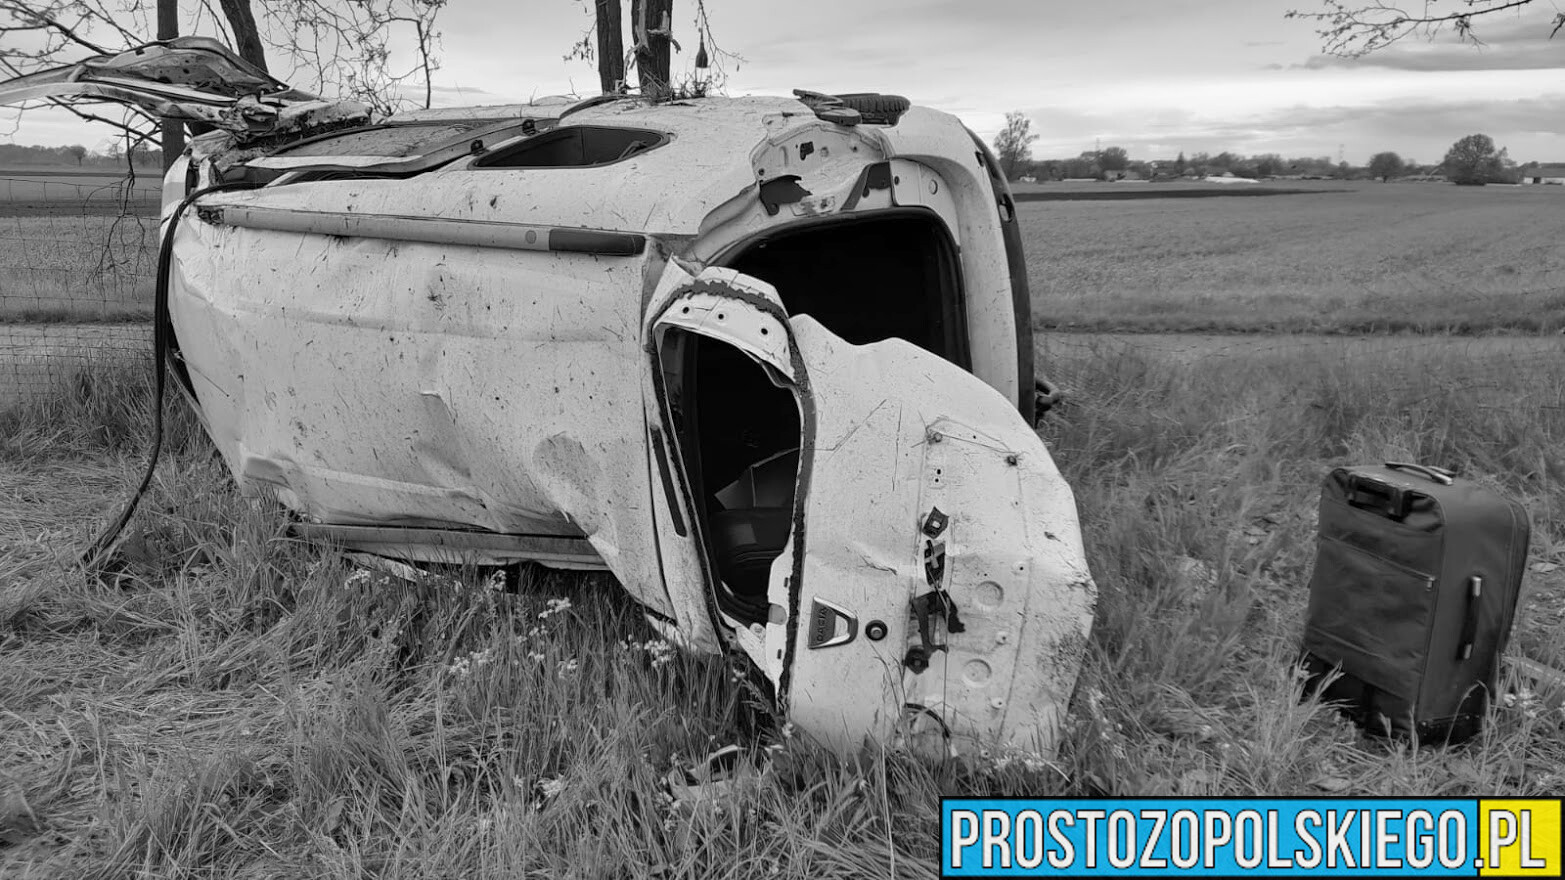 Śmiertelny wypadek na autostradzie A4.Dacia wypadła z drogi i dachowała. Na miejscu lądował LPR ratownik13.